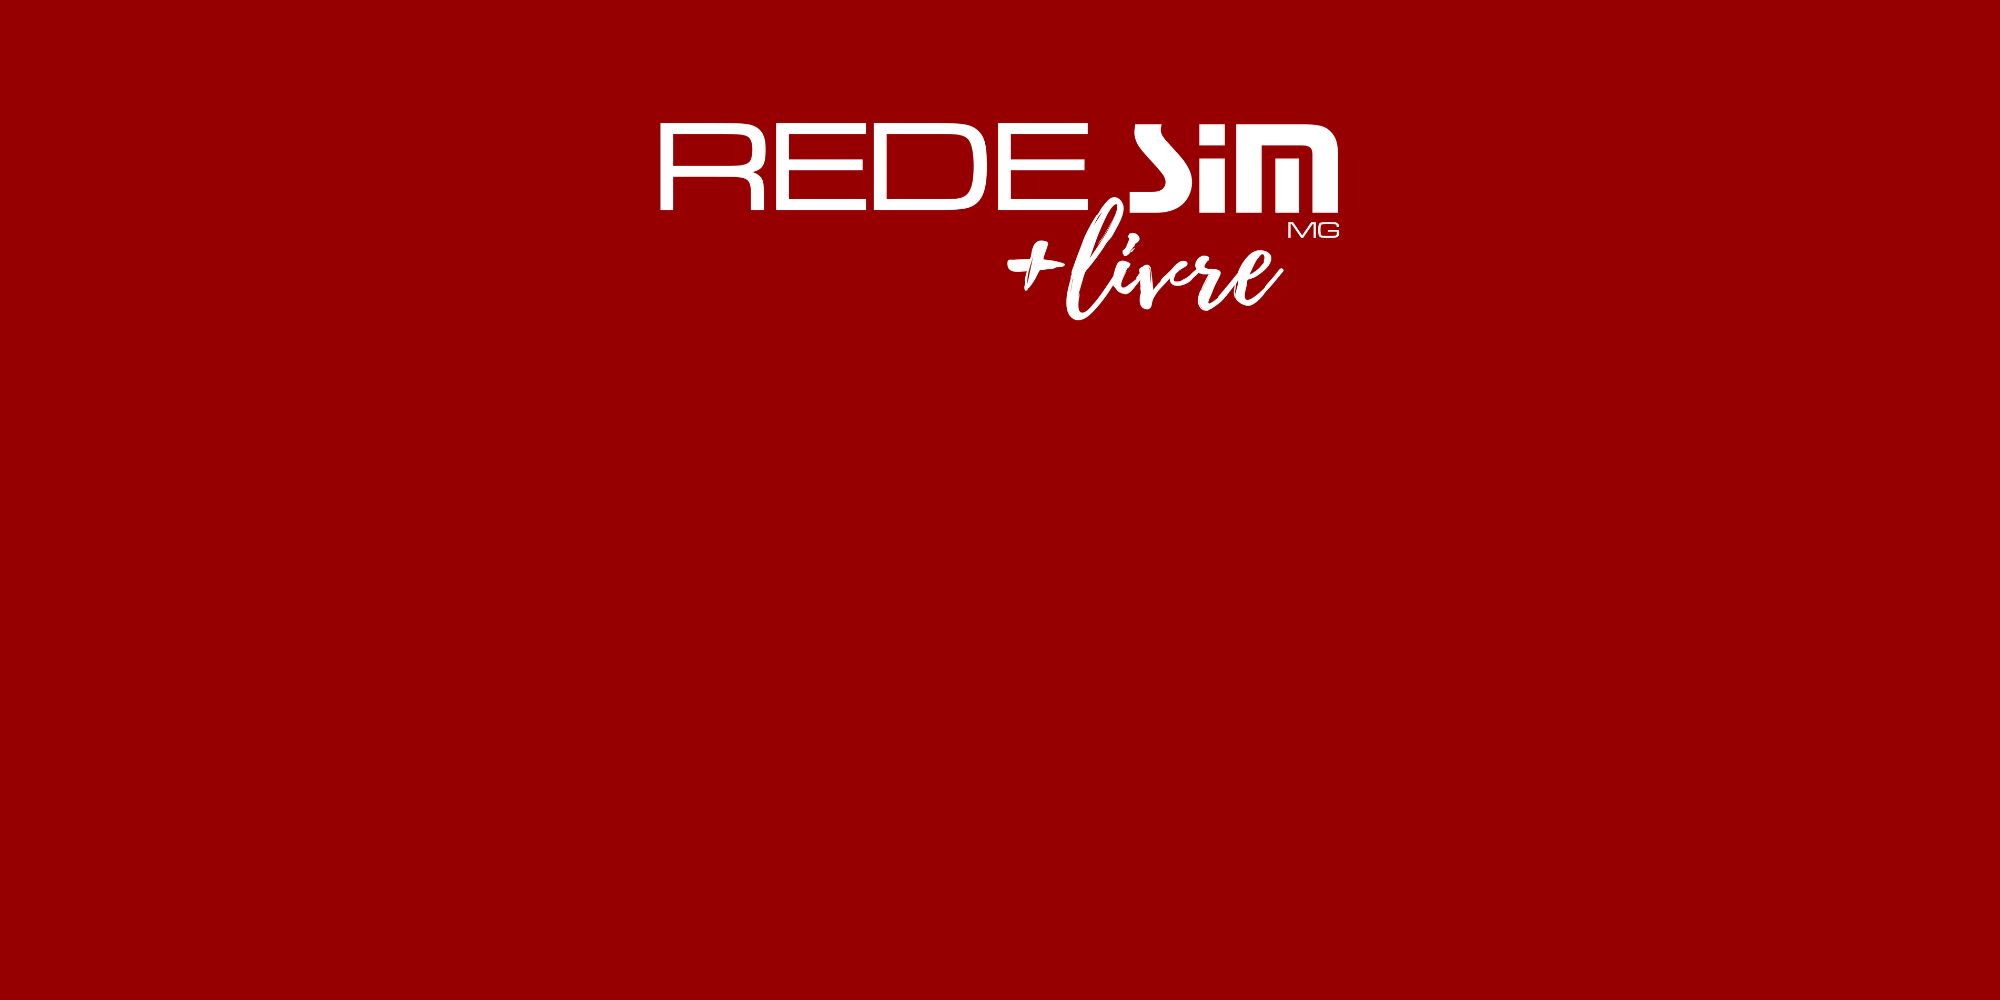 Redesim + Livre será lançado oficialmente em Curvelo nesta terça, dia 14